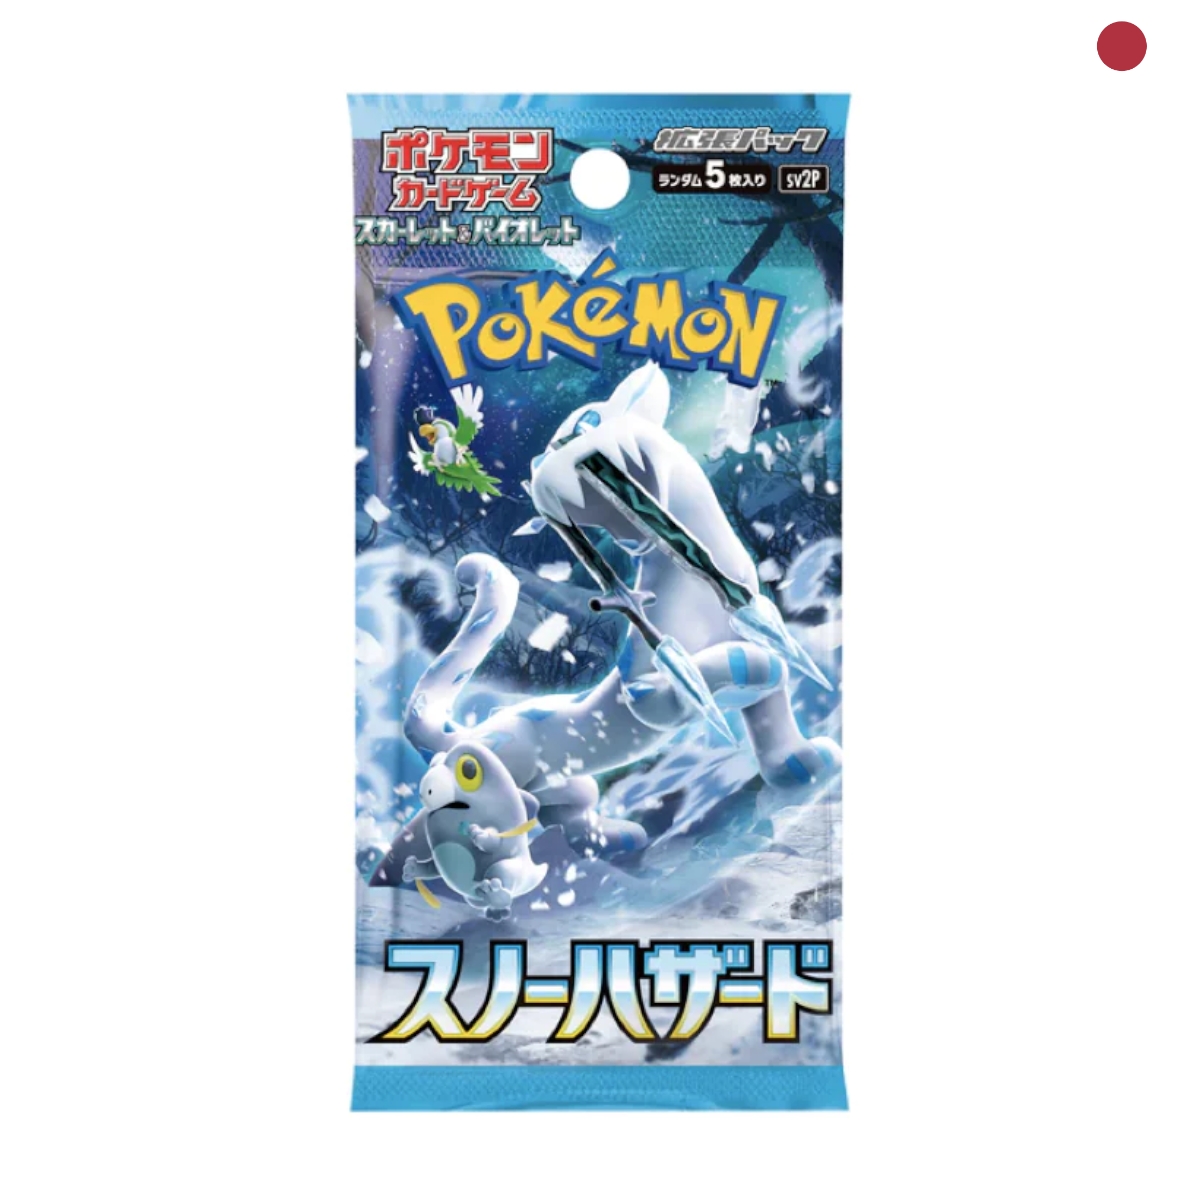 Pokémon - Snow Hazard sv2P Booster japanisch